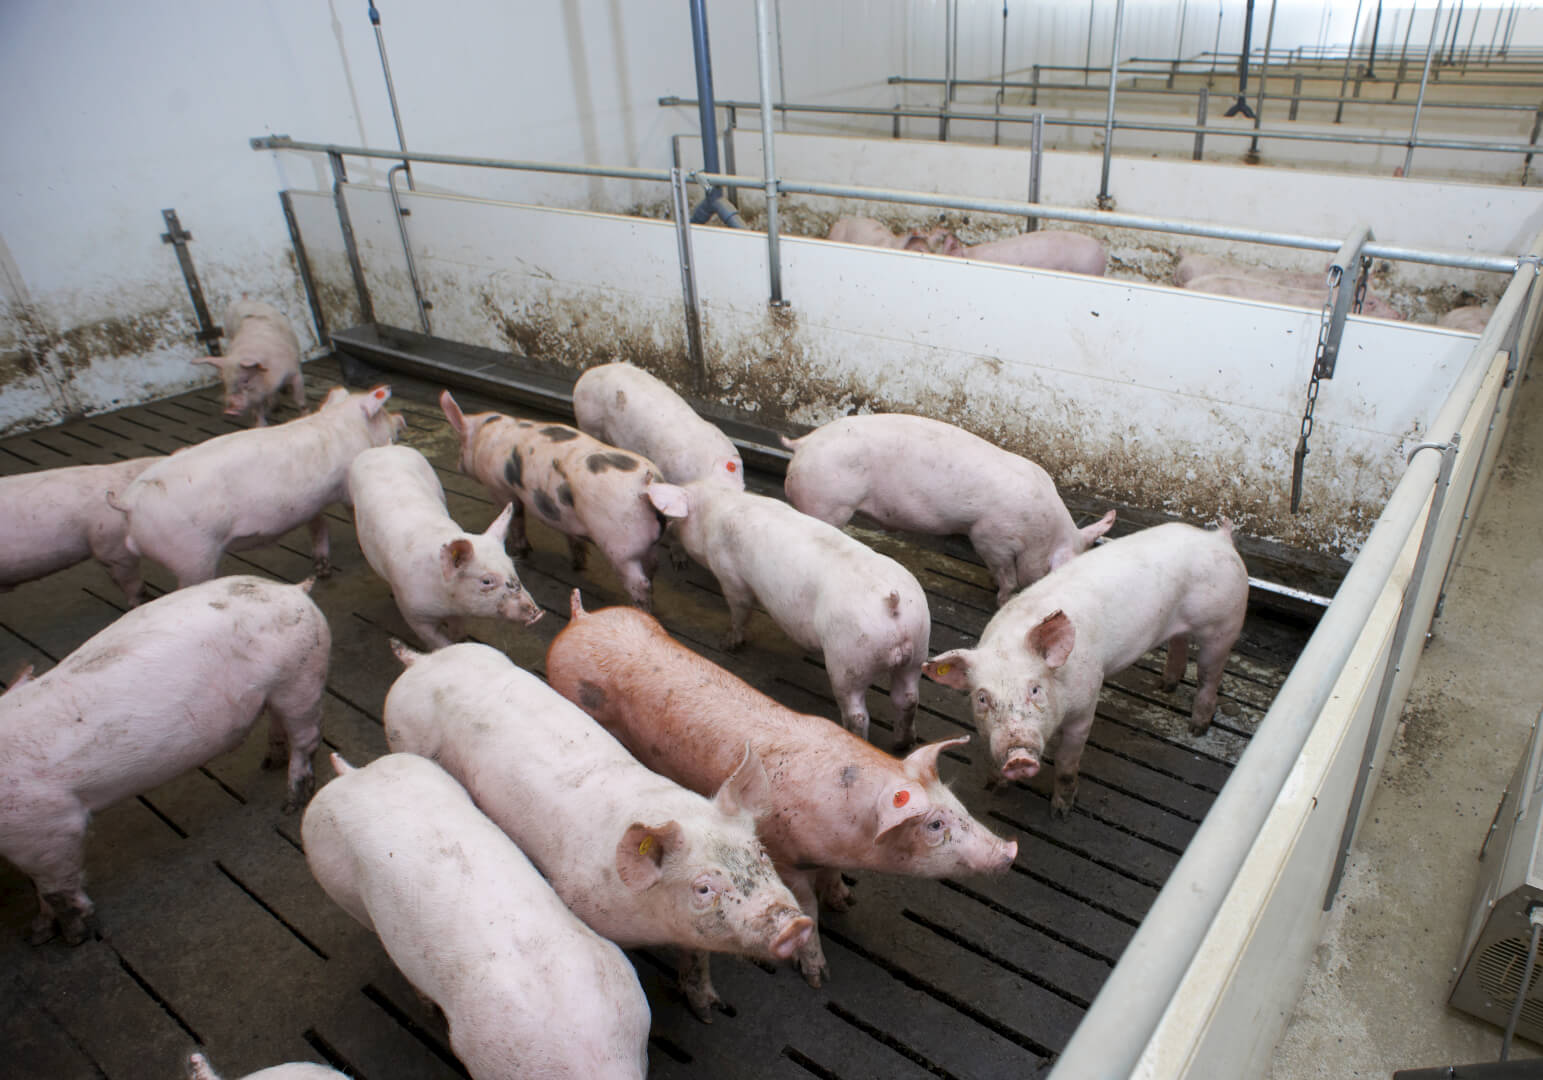 De varkens lopen op een vloer van betonroosters. De roosters met smalle spleten tellen als dichte vloer waardoor de hygiëne in de hokken voldoende blijft. 